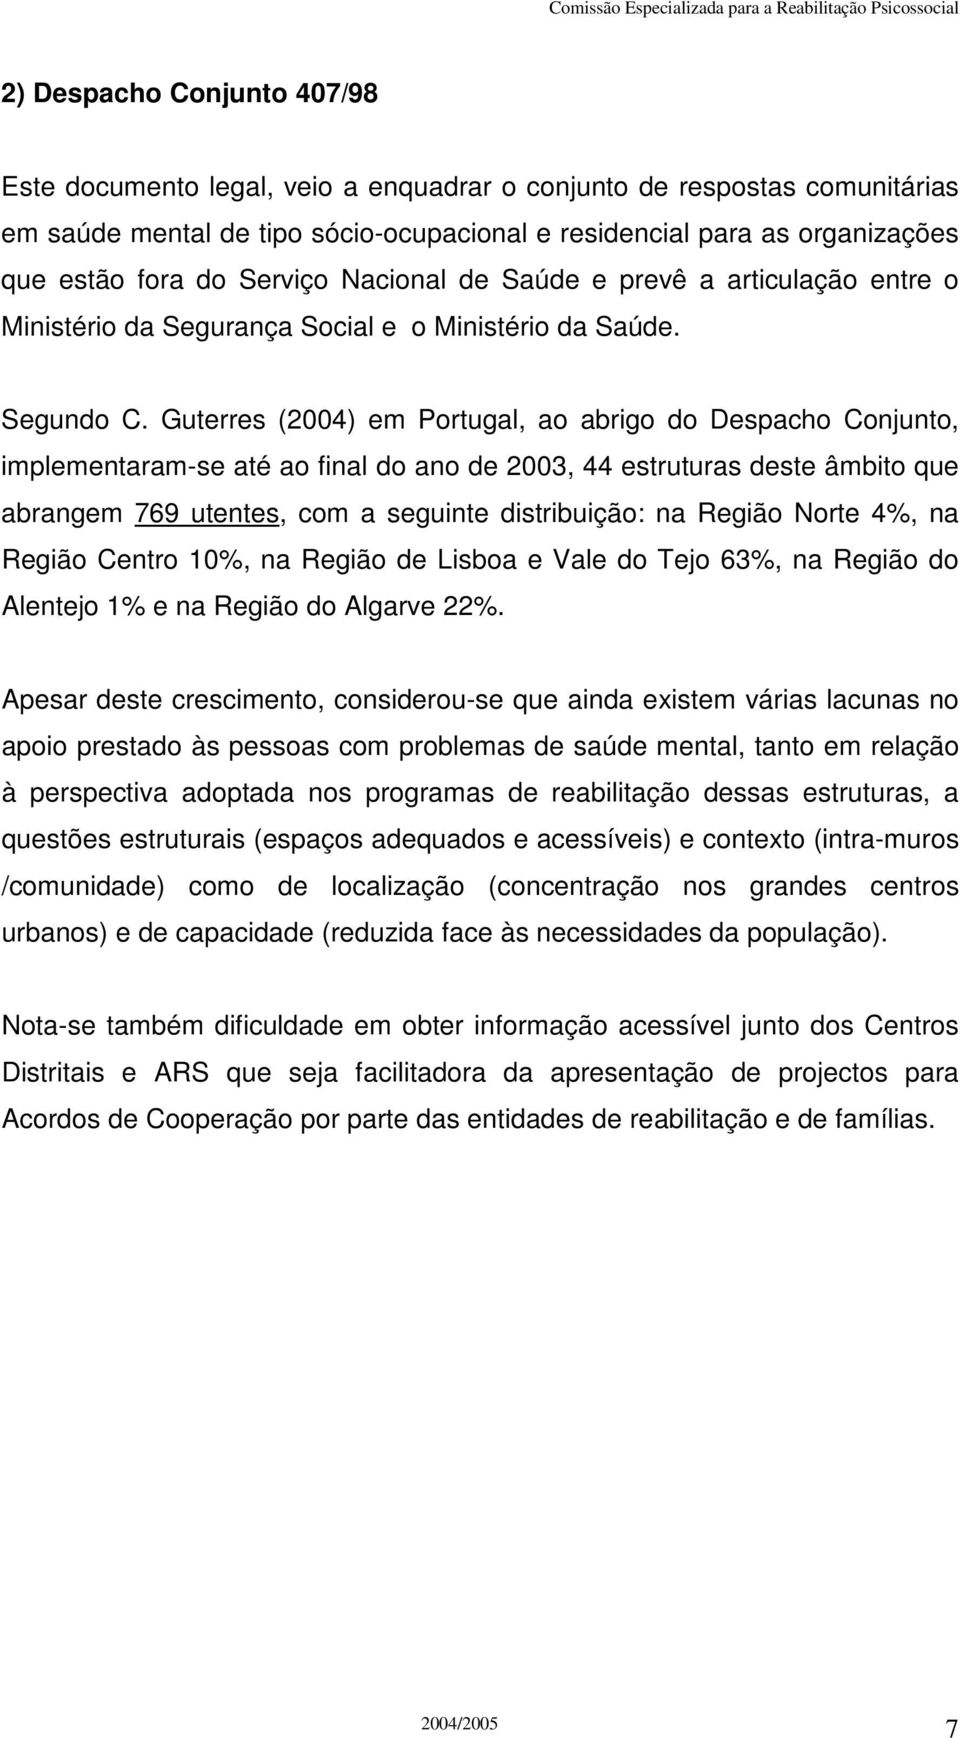 Guterres (2004) em Portugal, ao abrigo do Despacho Conjunto, implementaram-se até ao final do ano de 2003, 44 estruturas deste âmbito que abrangem 769 utentes, com a seguinte distribuição: na Região